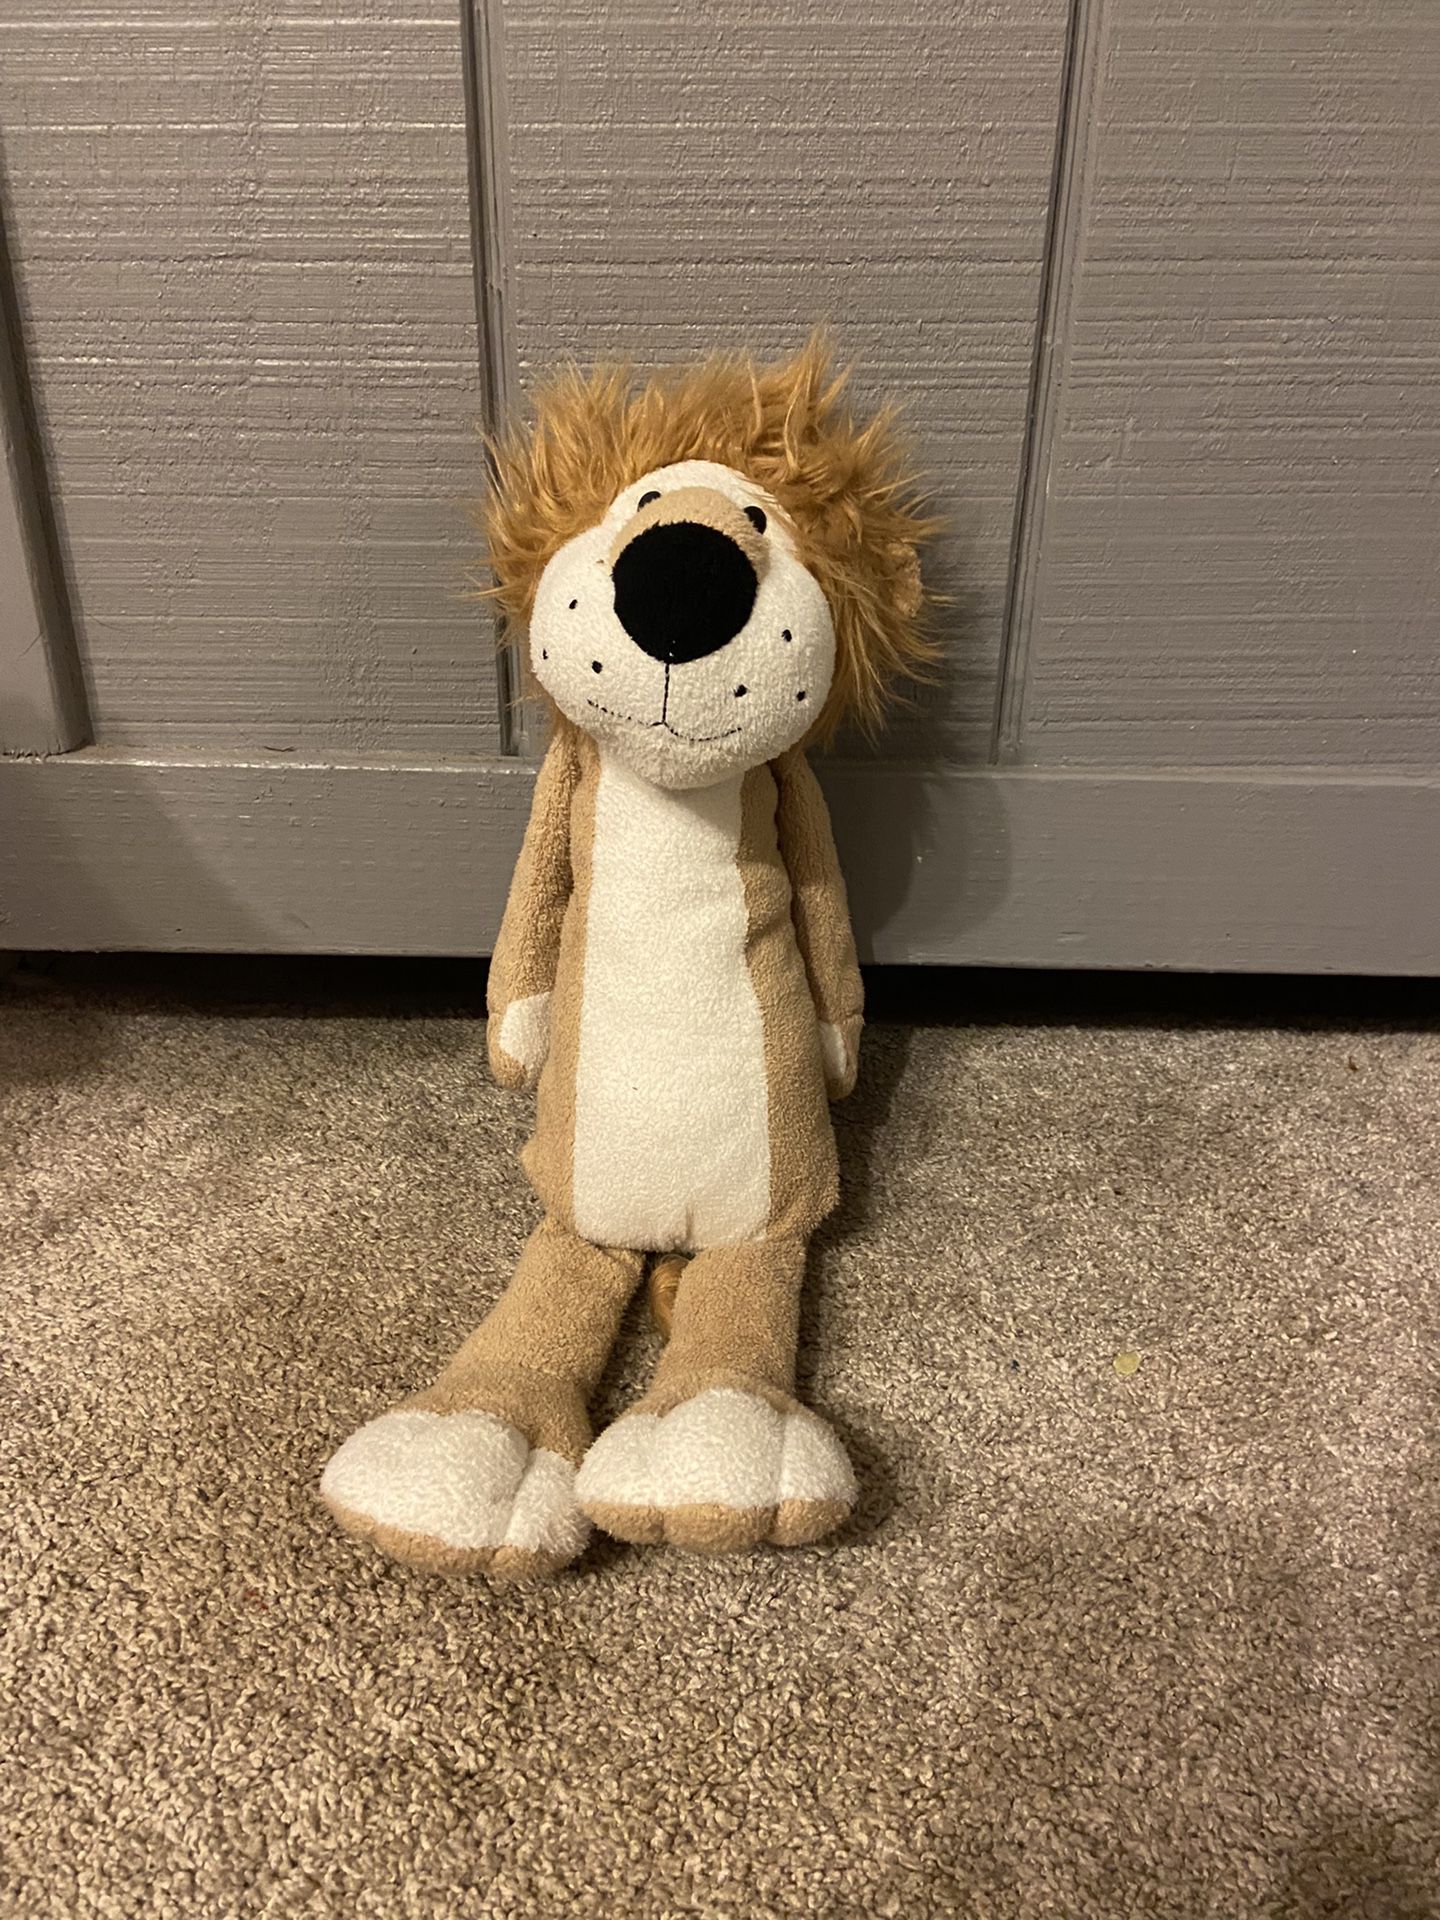 Adorable Floppy Stuffed Plush Lion 